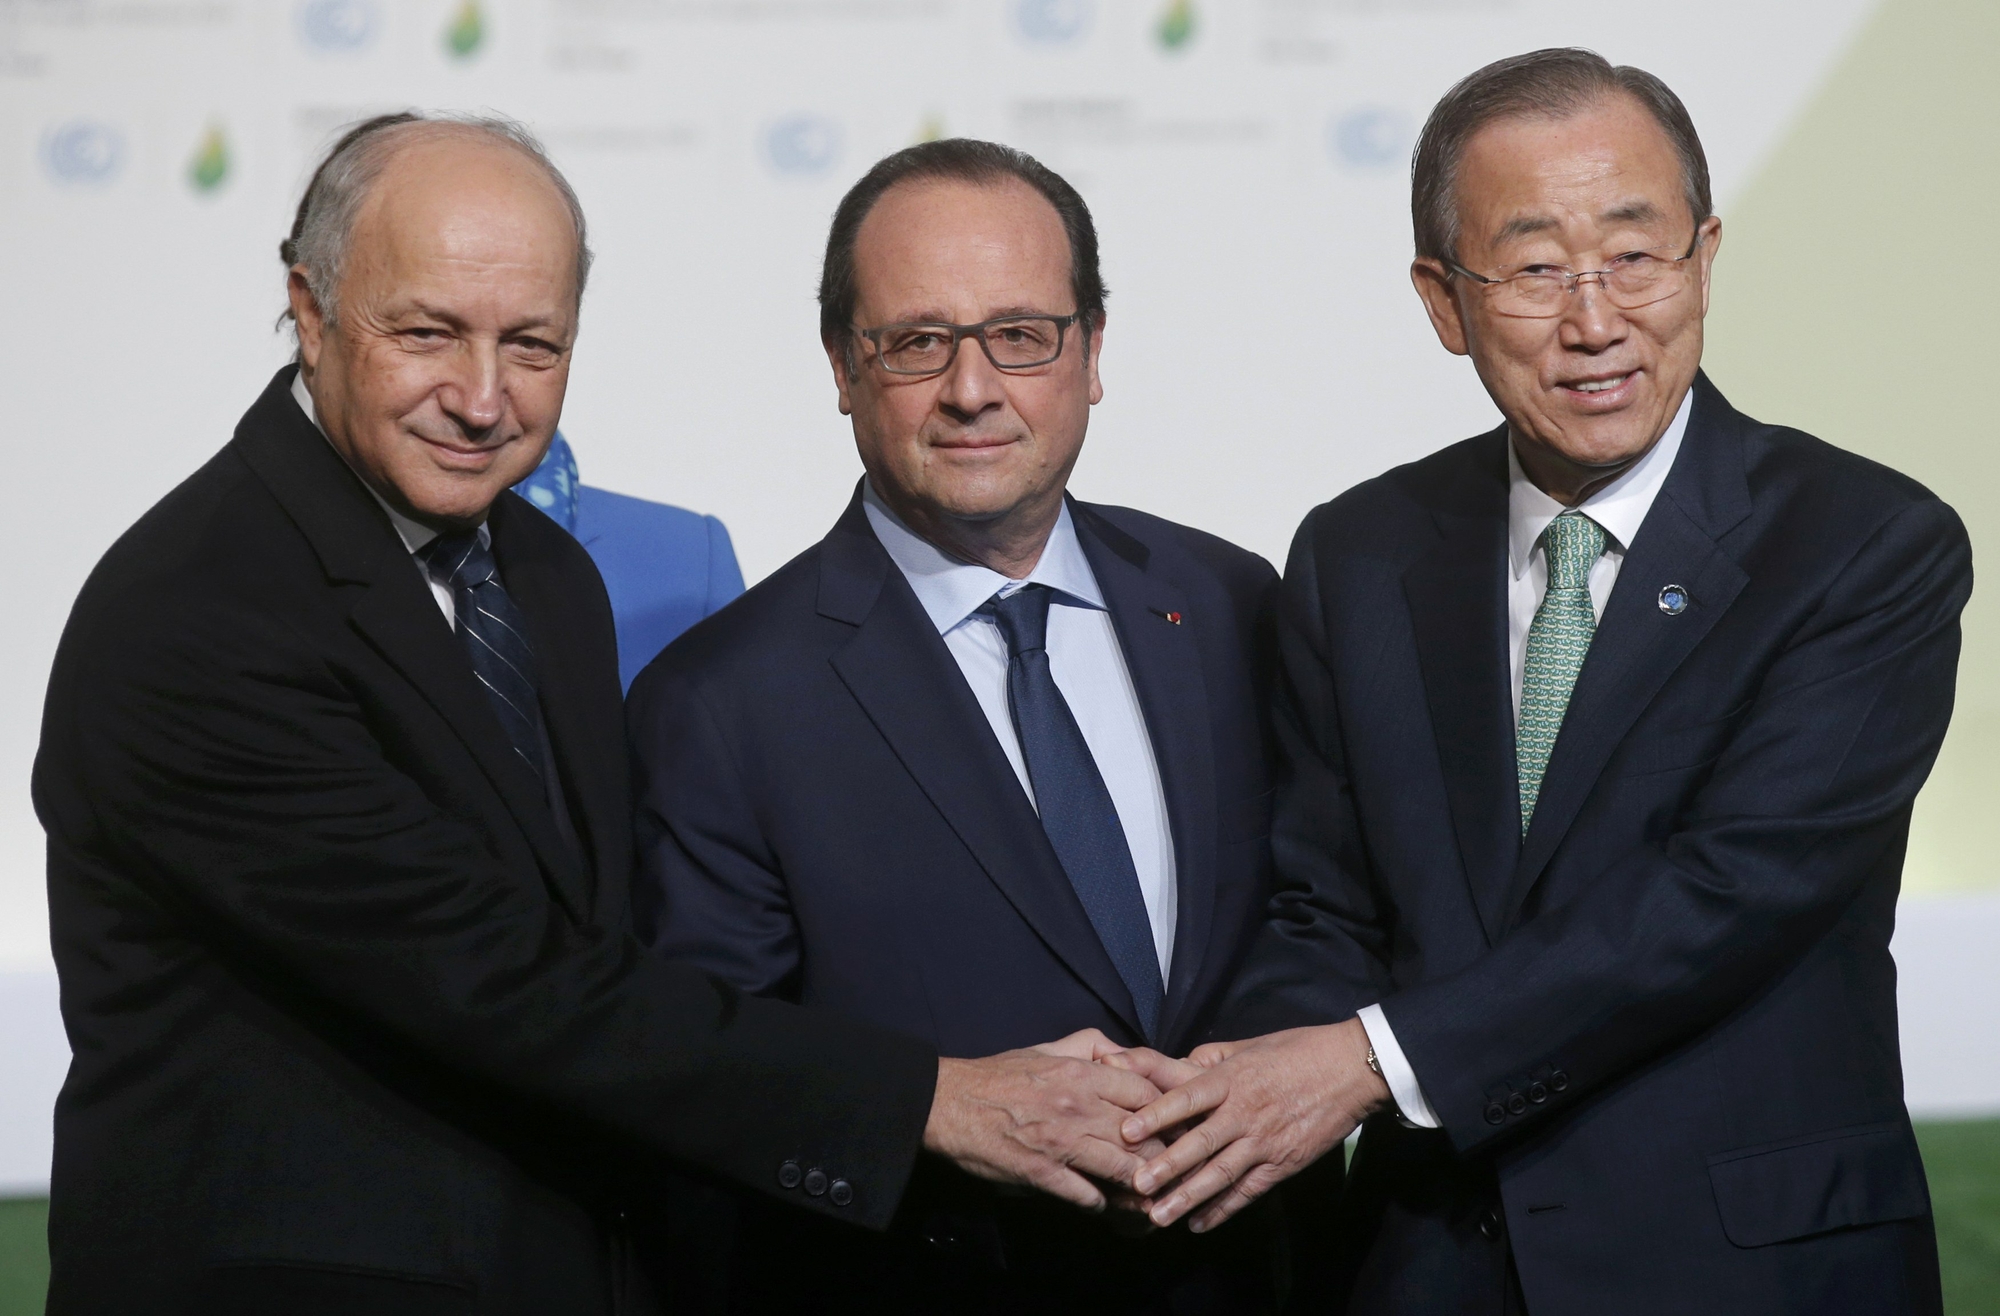 O presidente da França, François Hollande, o chanceler francês, Laurent Fabius, e o secretário-geral da ONU, Kofi Annan, são vistos na sede da COP21, em Paris, nesta segunda-feira (30) (Foto: Christian Hartmann/Reuters)